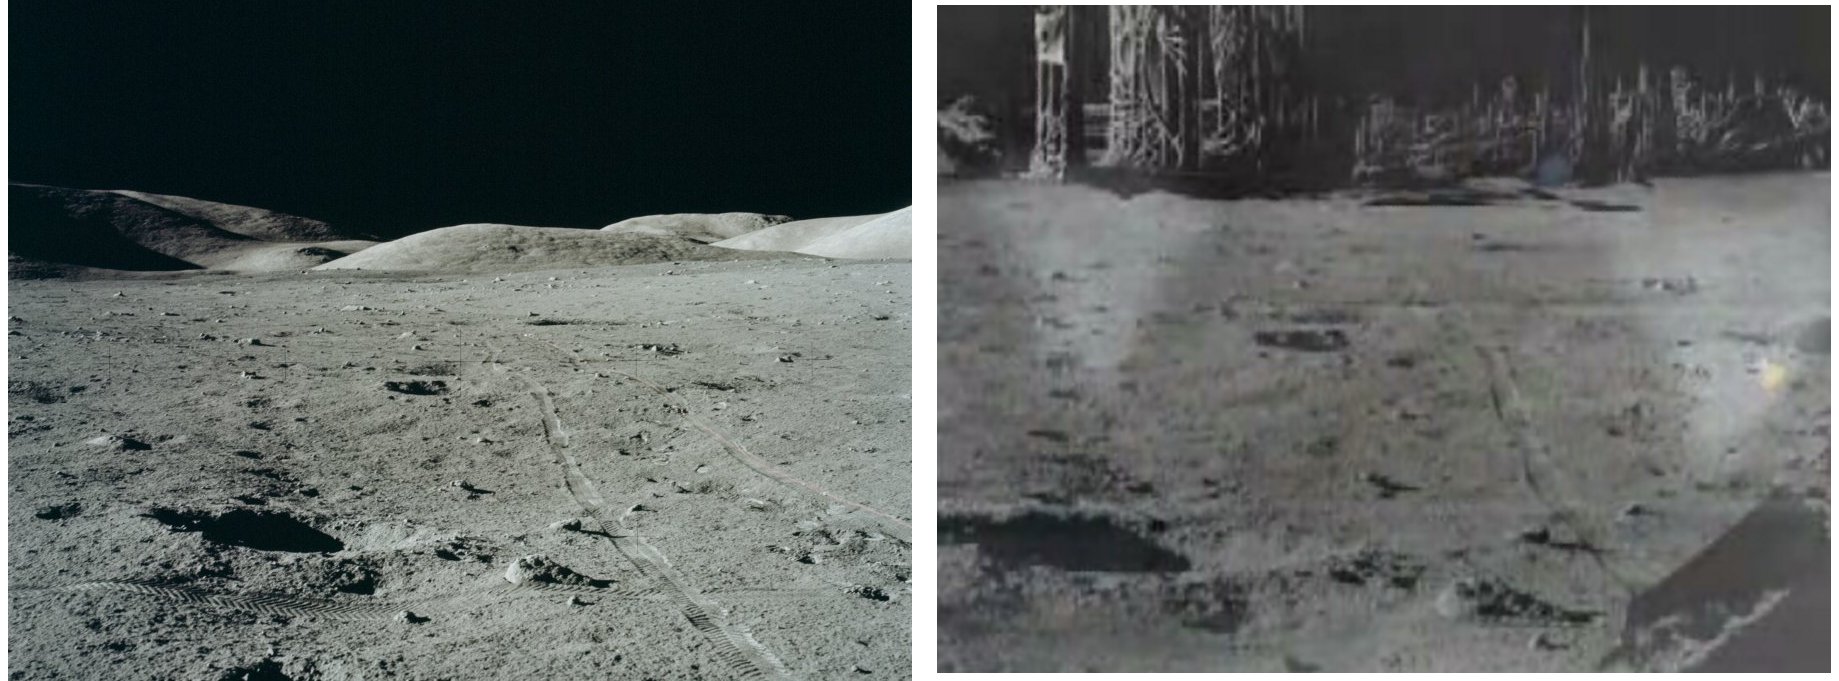 Comparison of genuine Apollo 17 photo and Apollo 20 fake